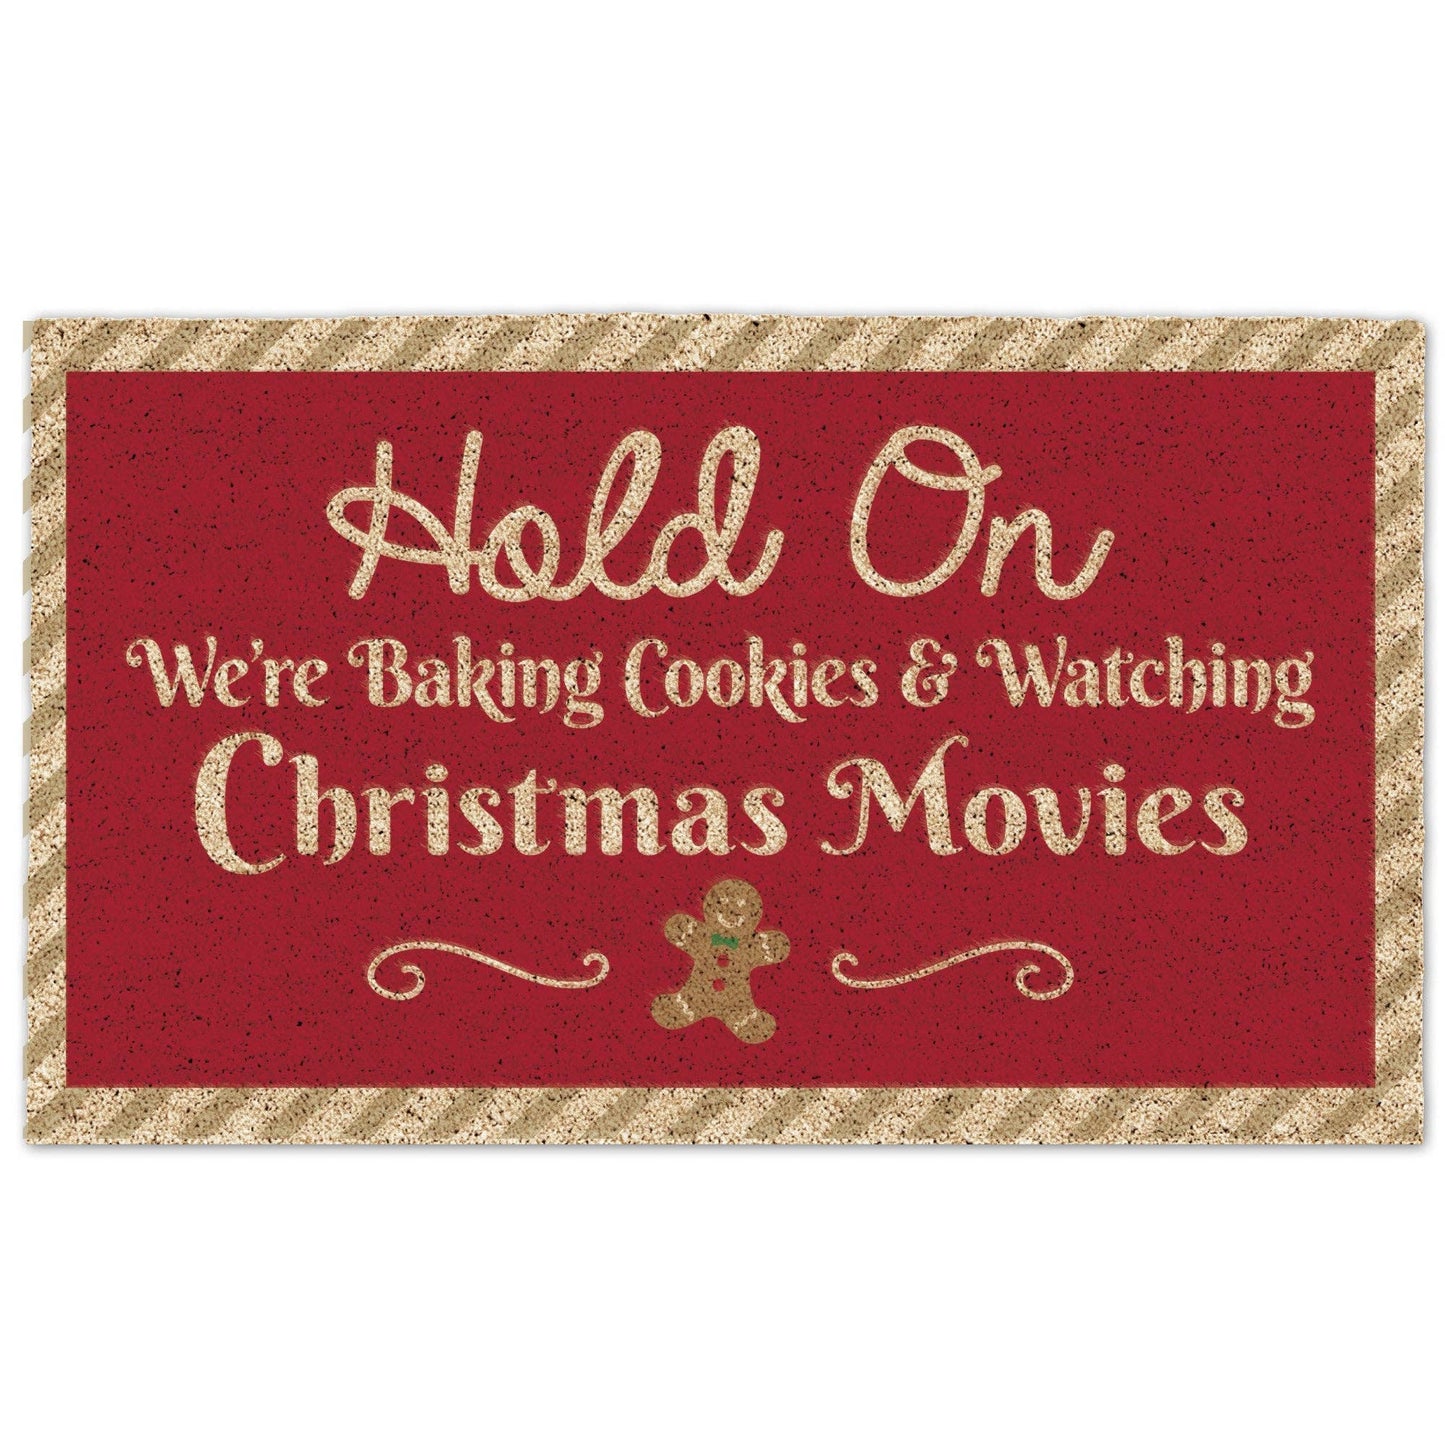 Cookies & Christmas Movies Doormat